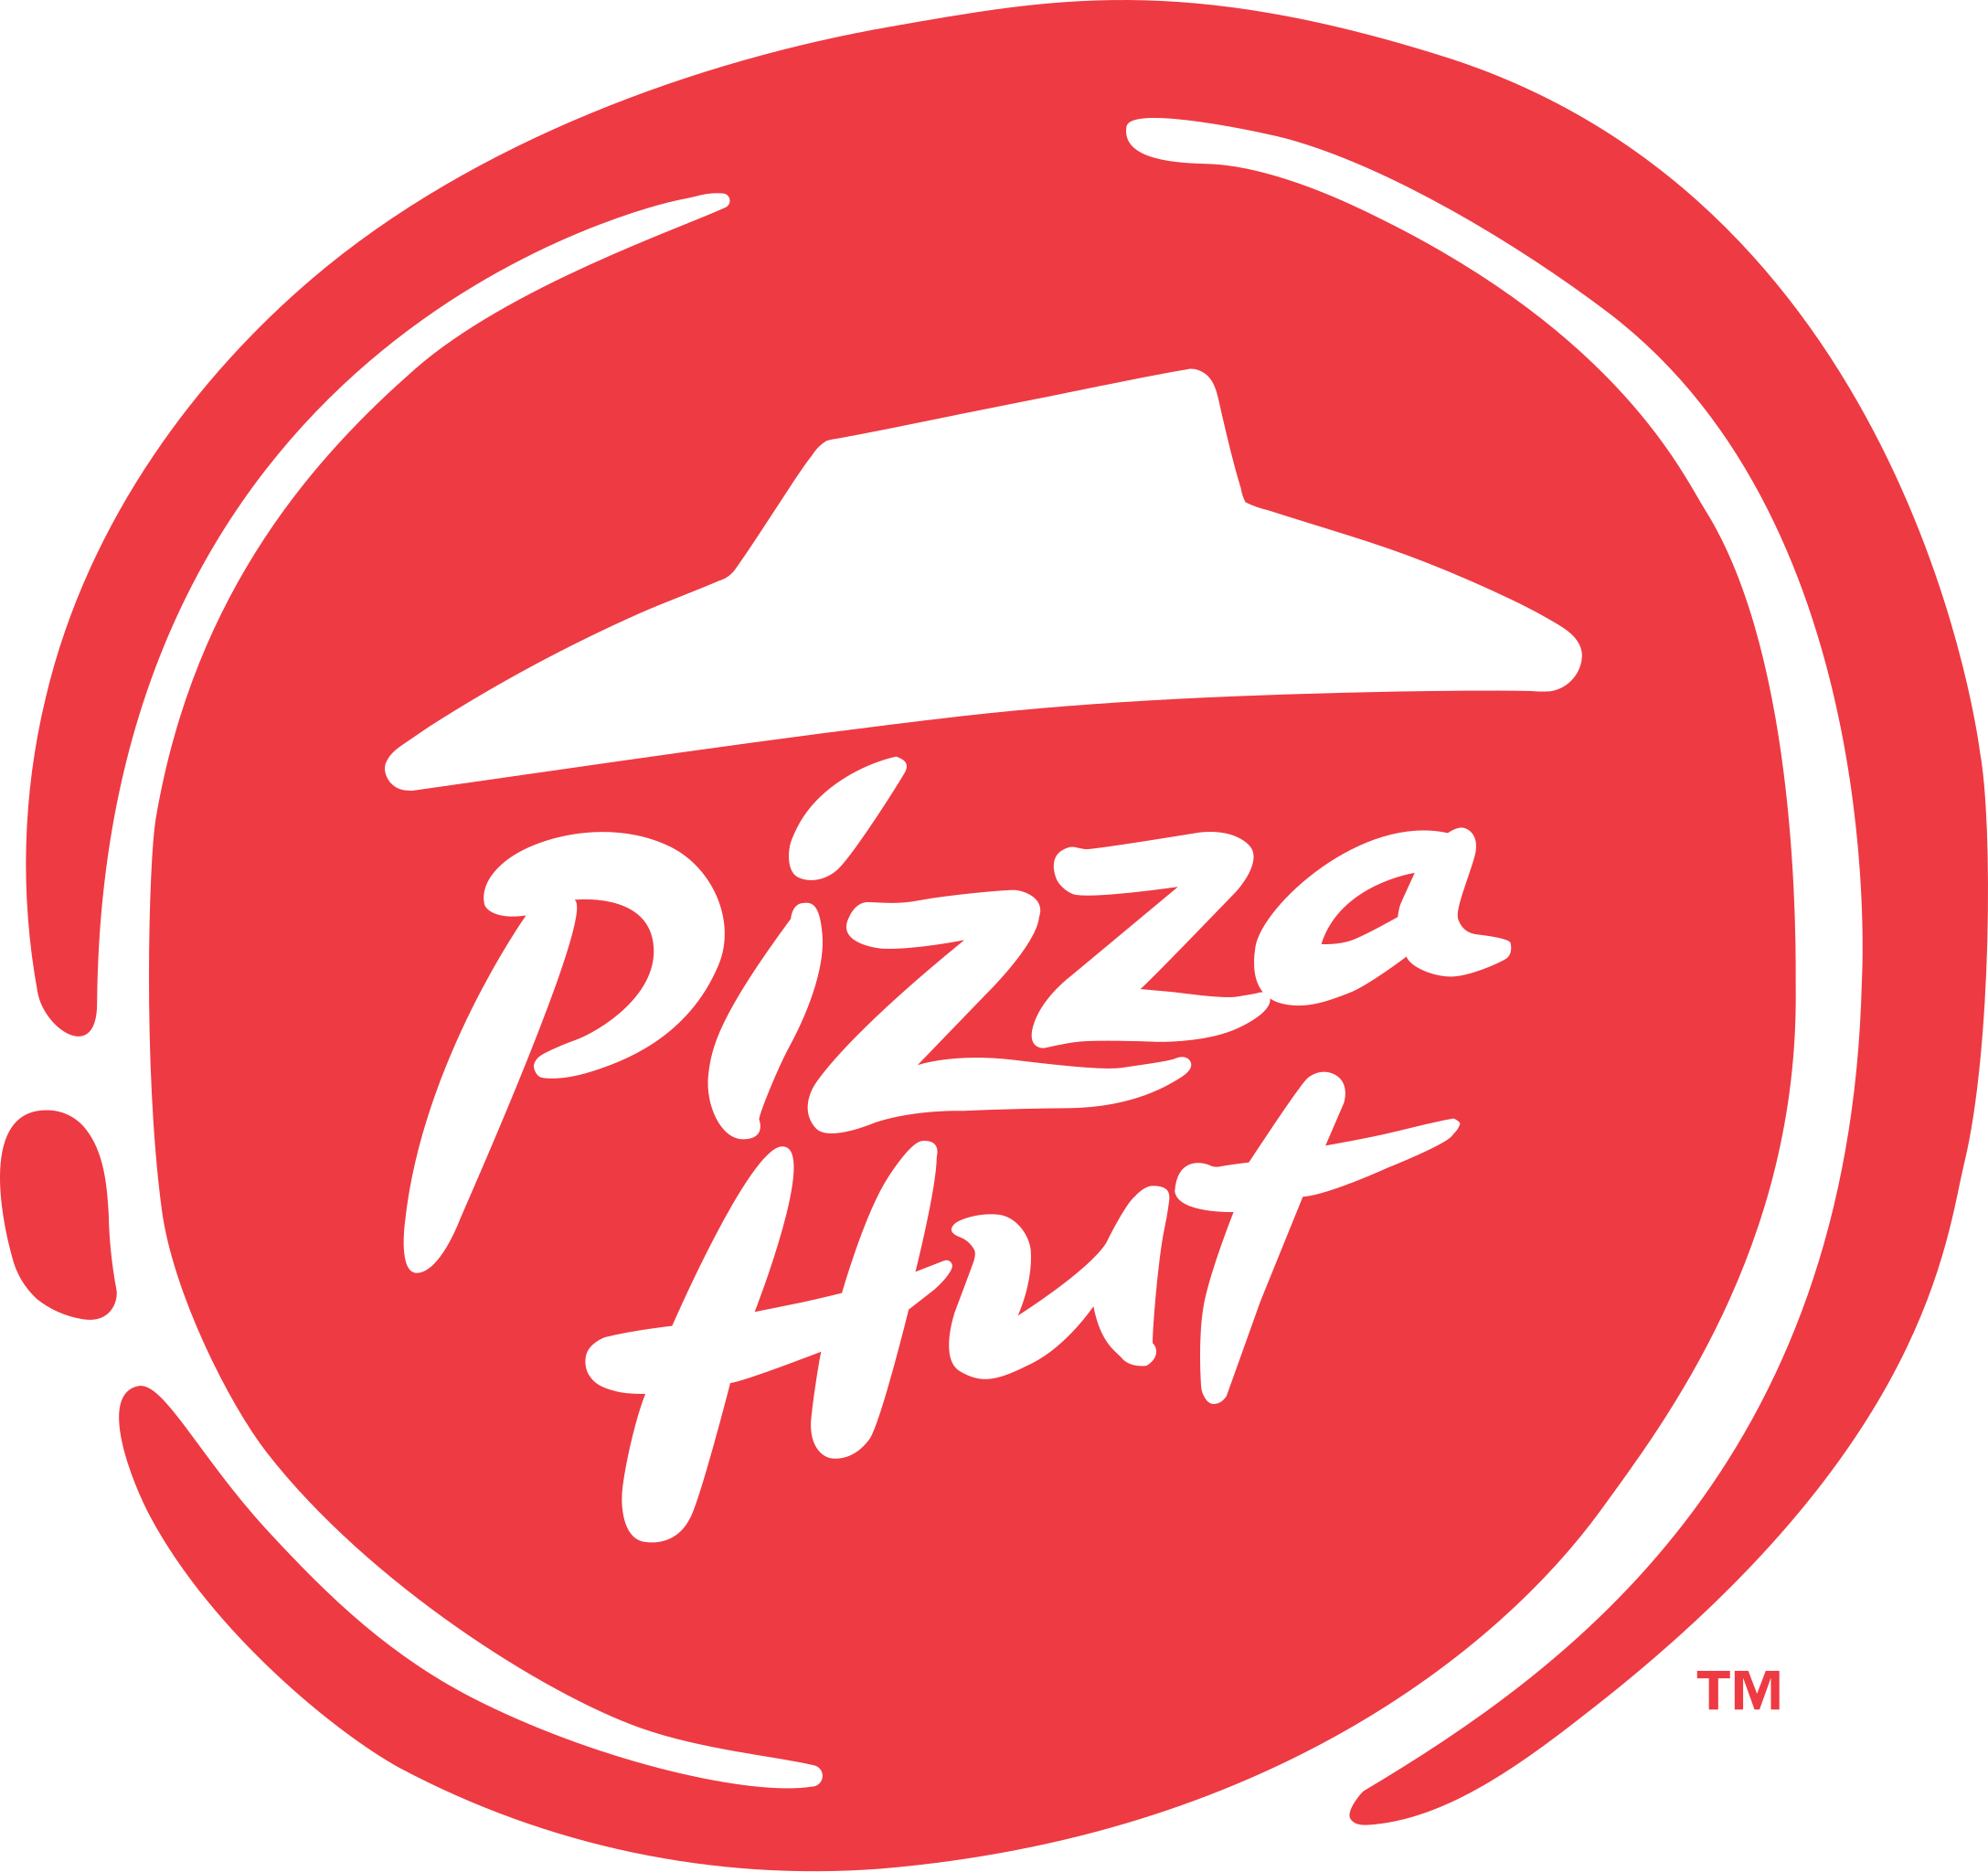 File:Pizza Hut international logo 2014.svg - Wikipedia